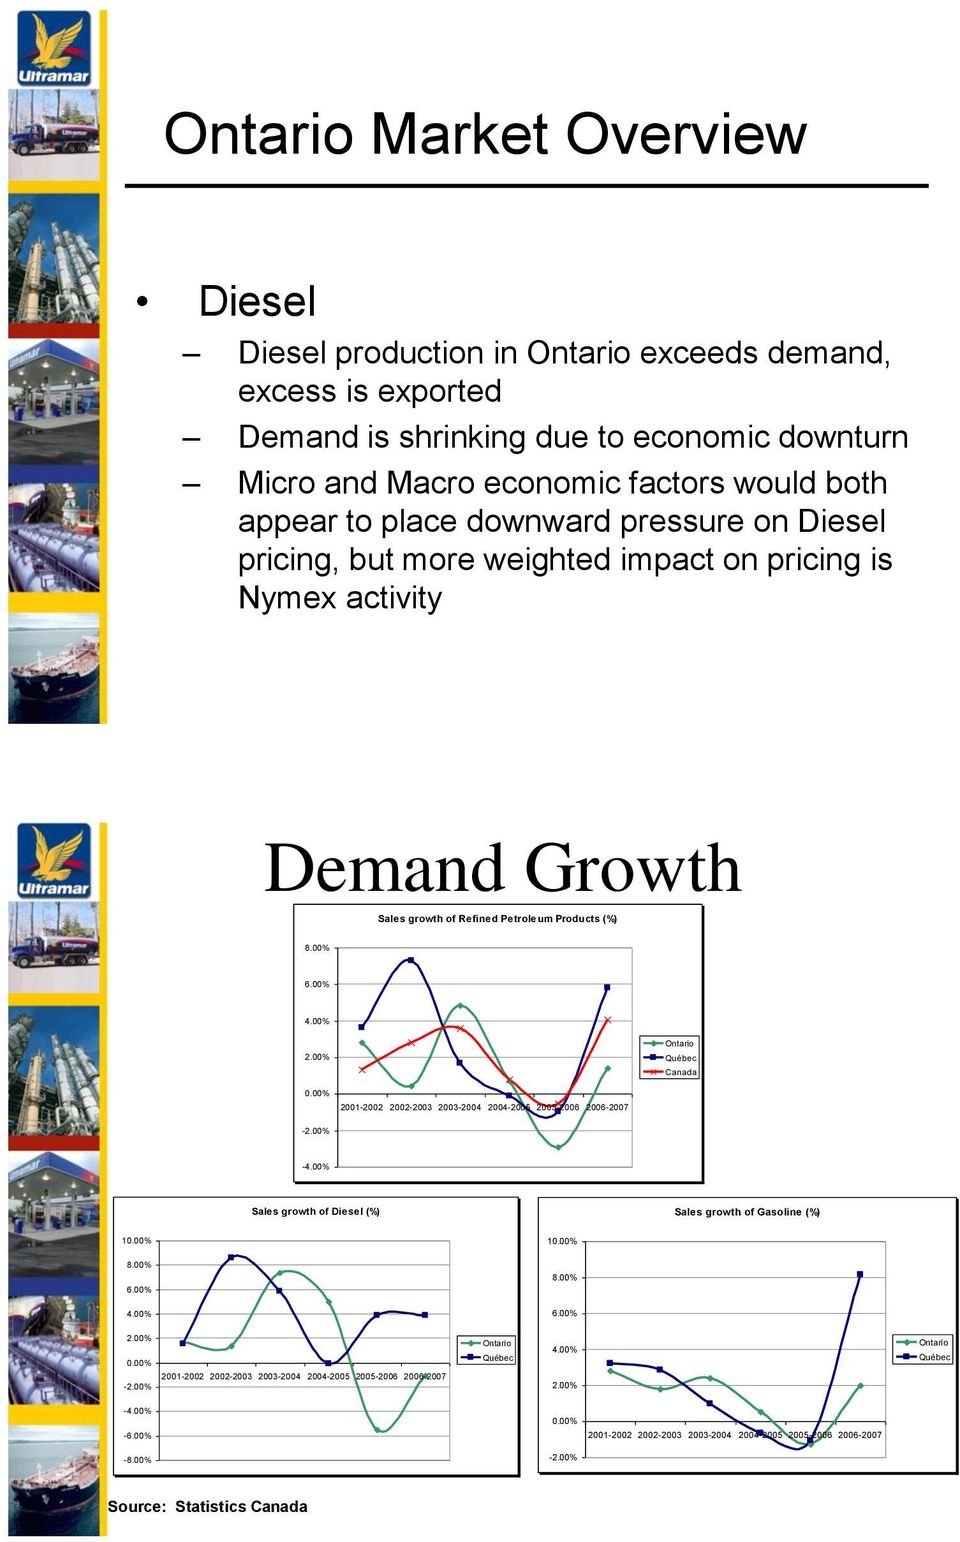 00% 2001-2002 2002-2003 2003-2004 2004-2005 2005-2006 2006-2007 -2.00% -4.00% Sales growth of Diesel (%) Sales growth of Gasoline (%) 10.00% 10.00% 8.00% 8.00% 6.00% 4.00% 6.00% 2.00% 0.